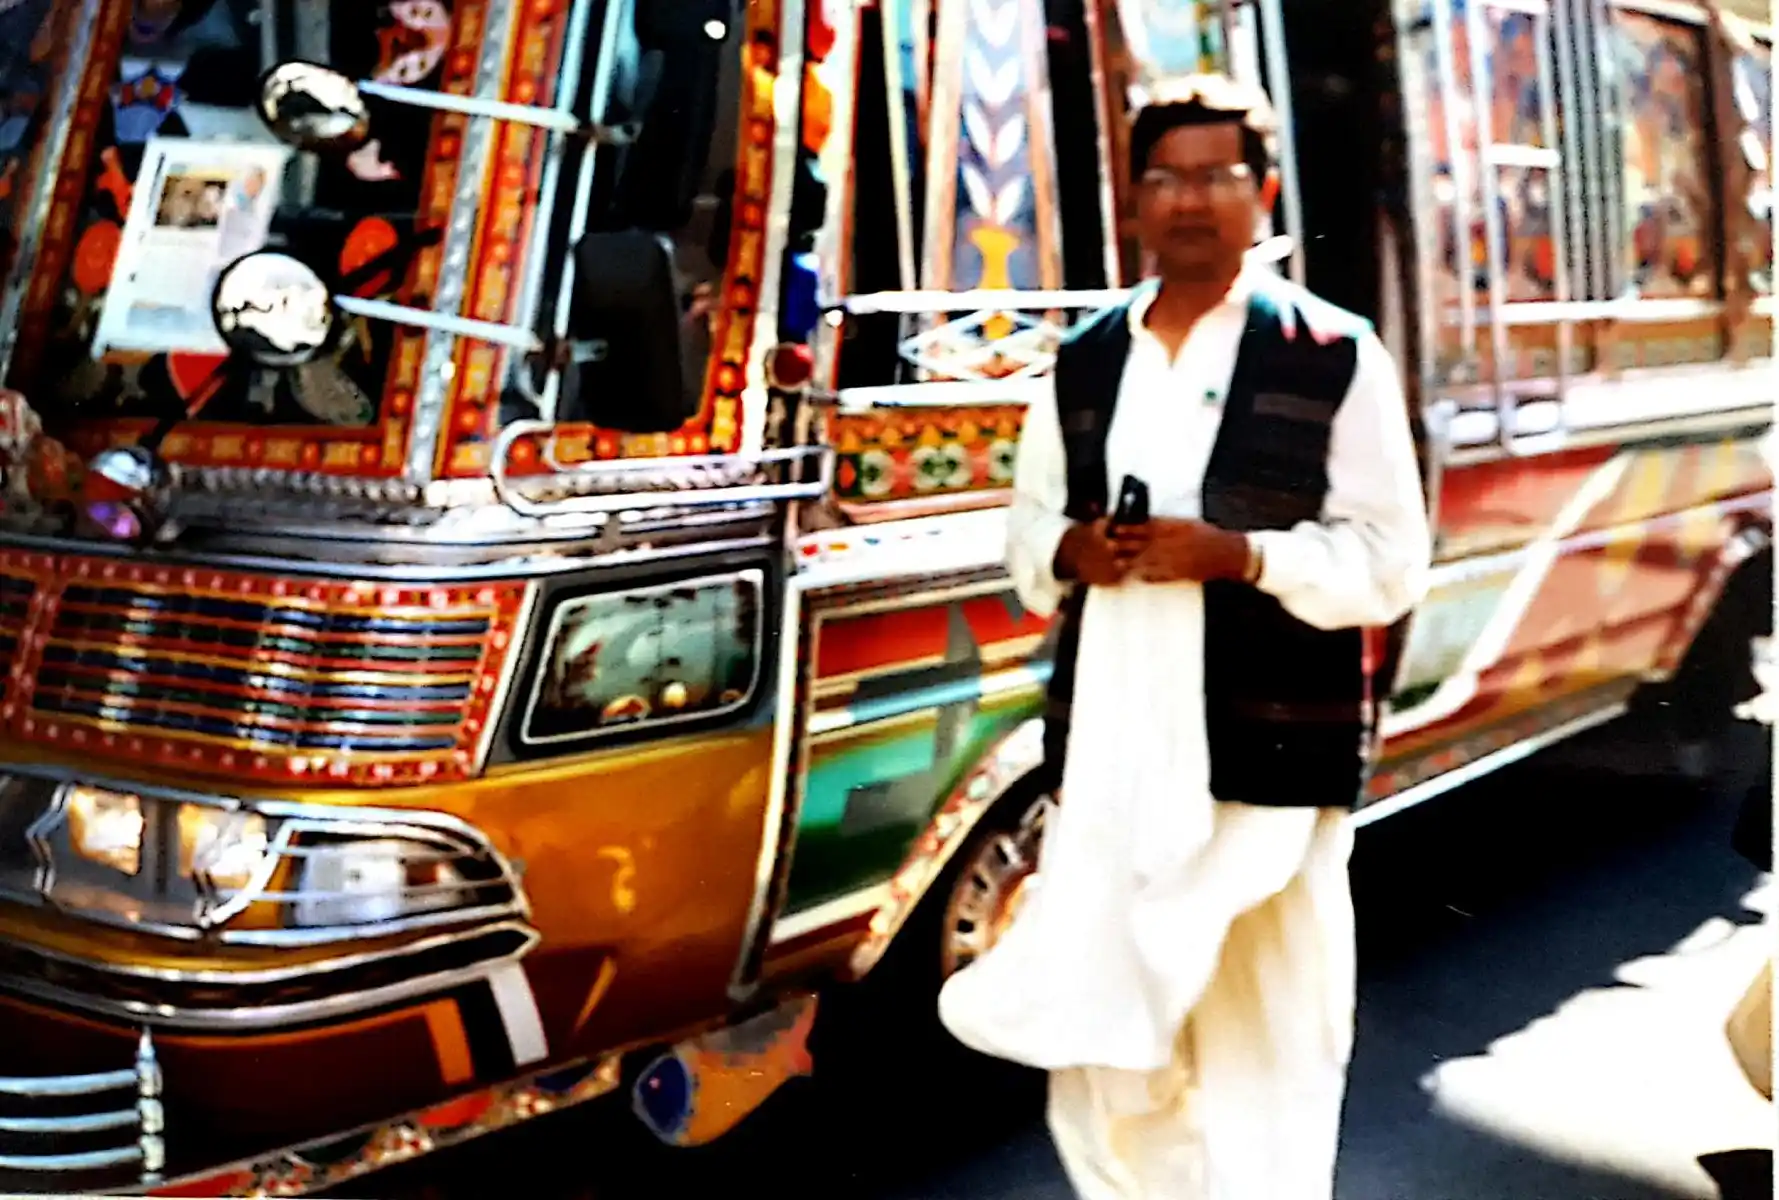 Abbildung-pakistanischer-Besucher-der-expo-in-hannover-im-jahr-2000-vor-einem-traditionellen-pakistanischen-Transportbus-IISW